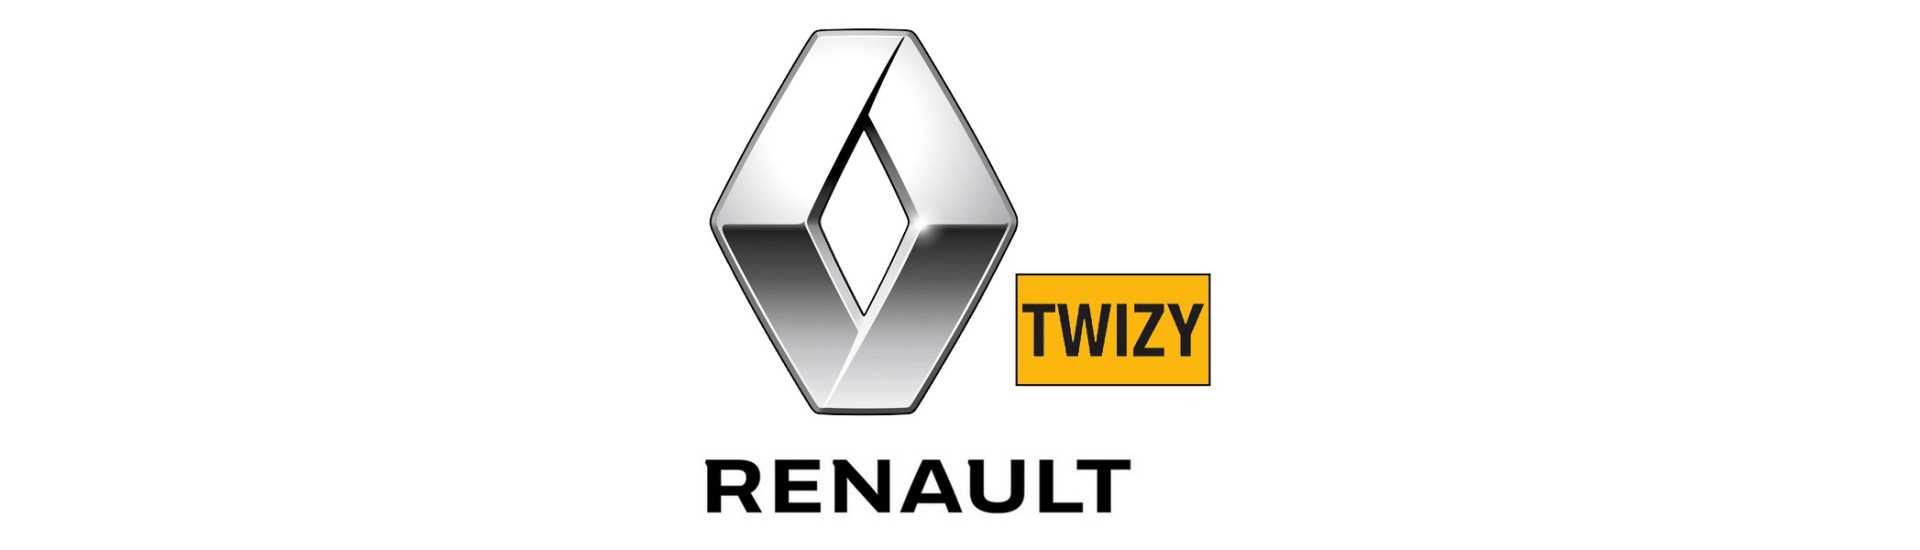 Verin de hayon au meilleur prix pour voiture sans permis Renault Twizy